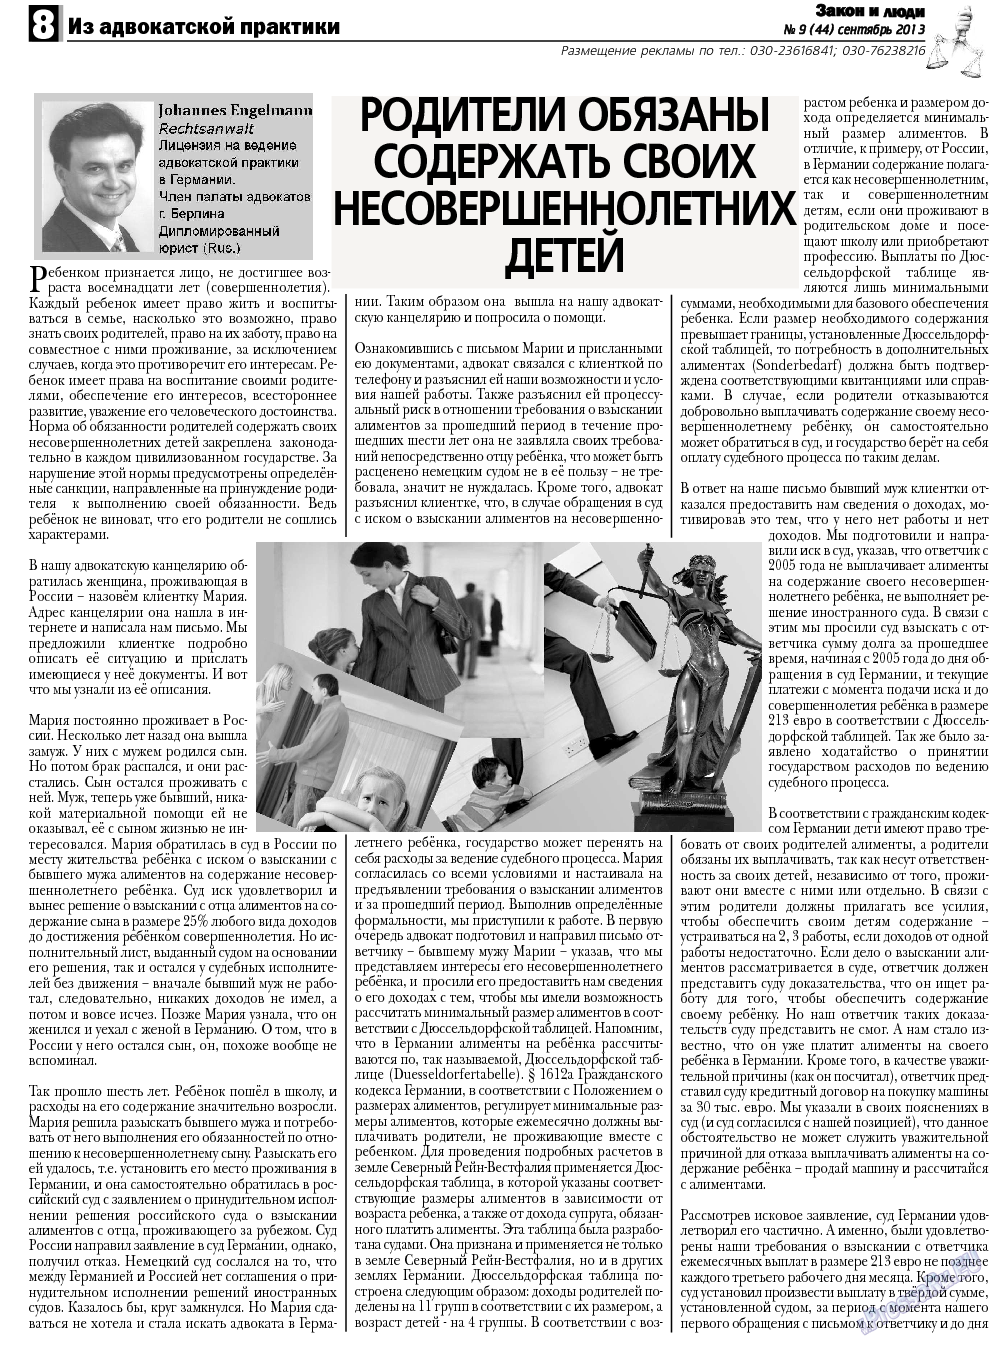 Закон и люди, газета. 2013 №9 стр.8